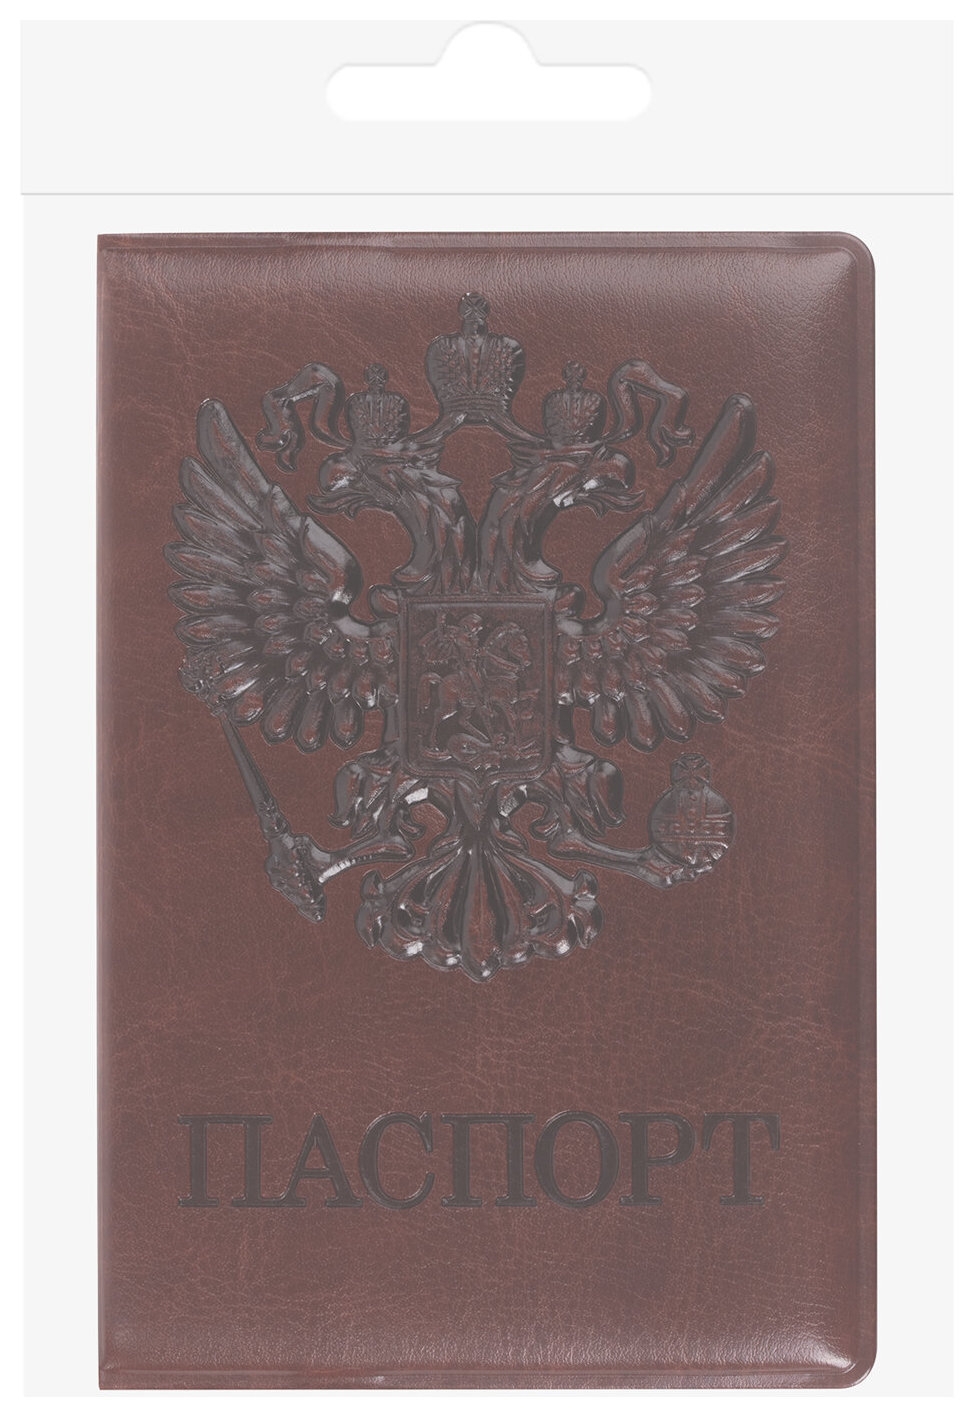 Обложка для паспорта Staff, полиуретан под кожу, Герб, коричневая, 237604